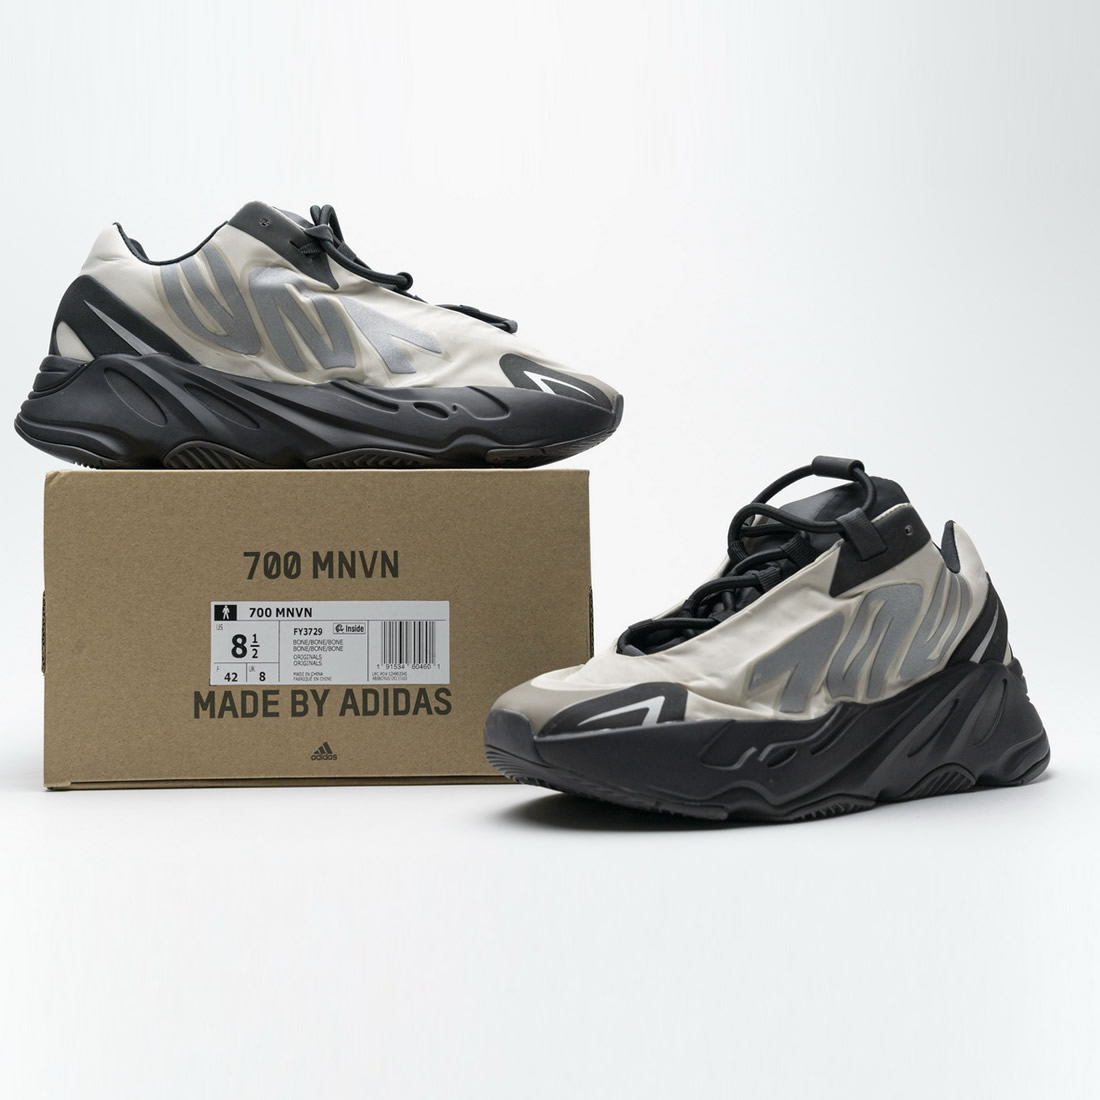 Adidas Yeezy Boost 700 Mnvn Bone Fy3729 New Release Date For Sale 6 - www.kickbulk.co